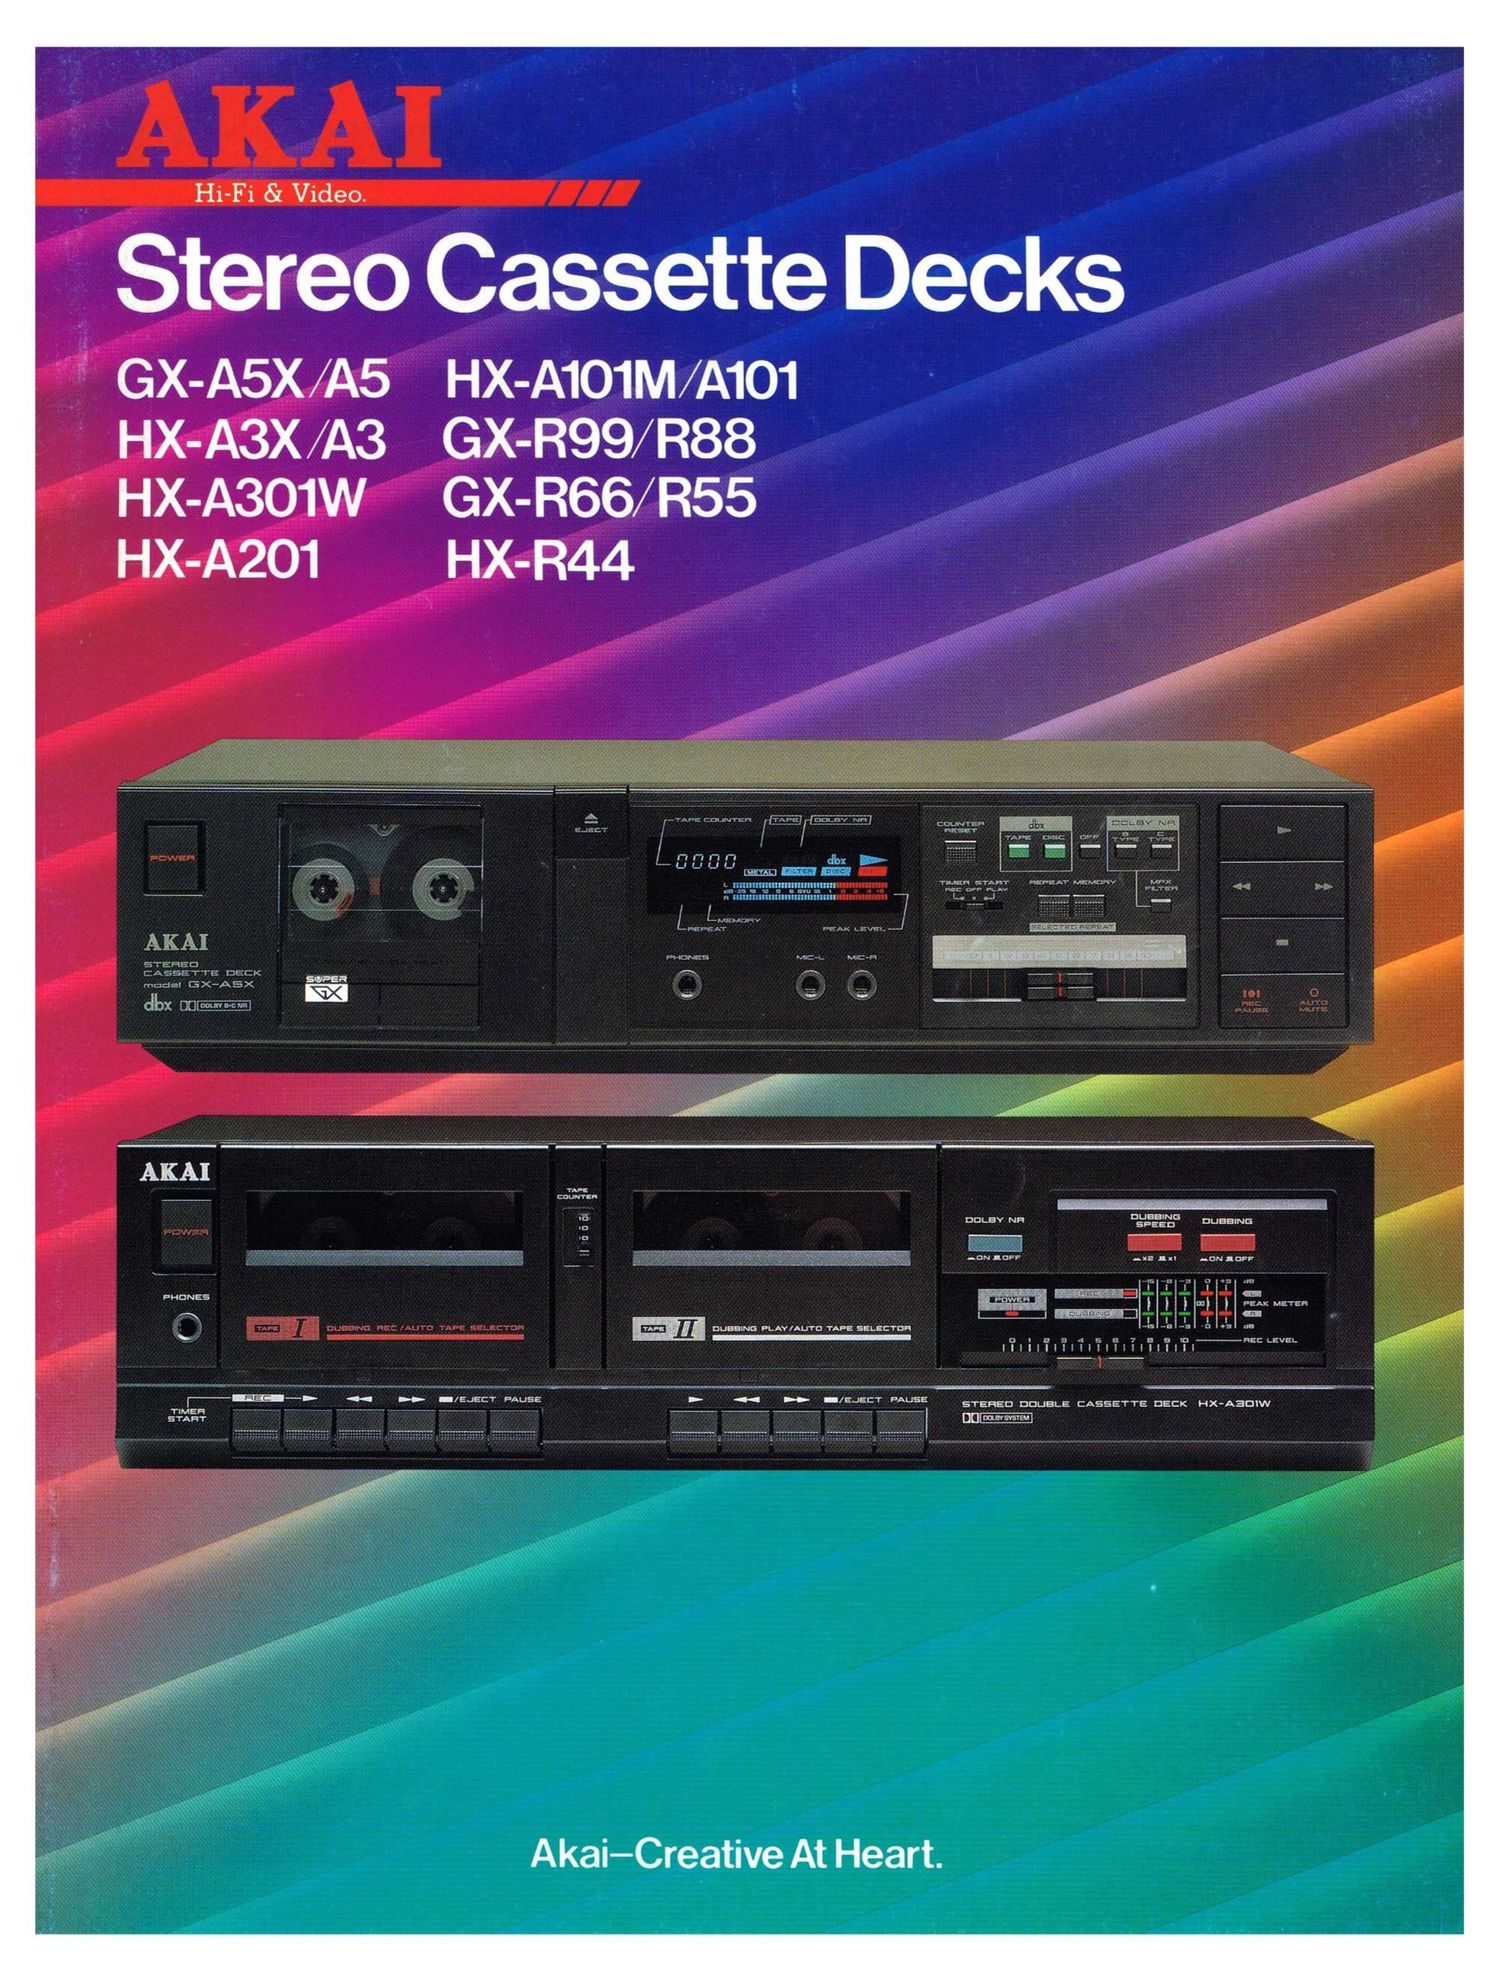 Akai Stereo Cassette Decks Catalog